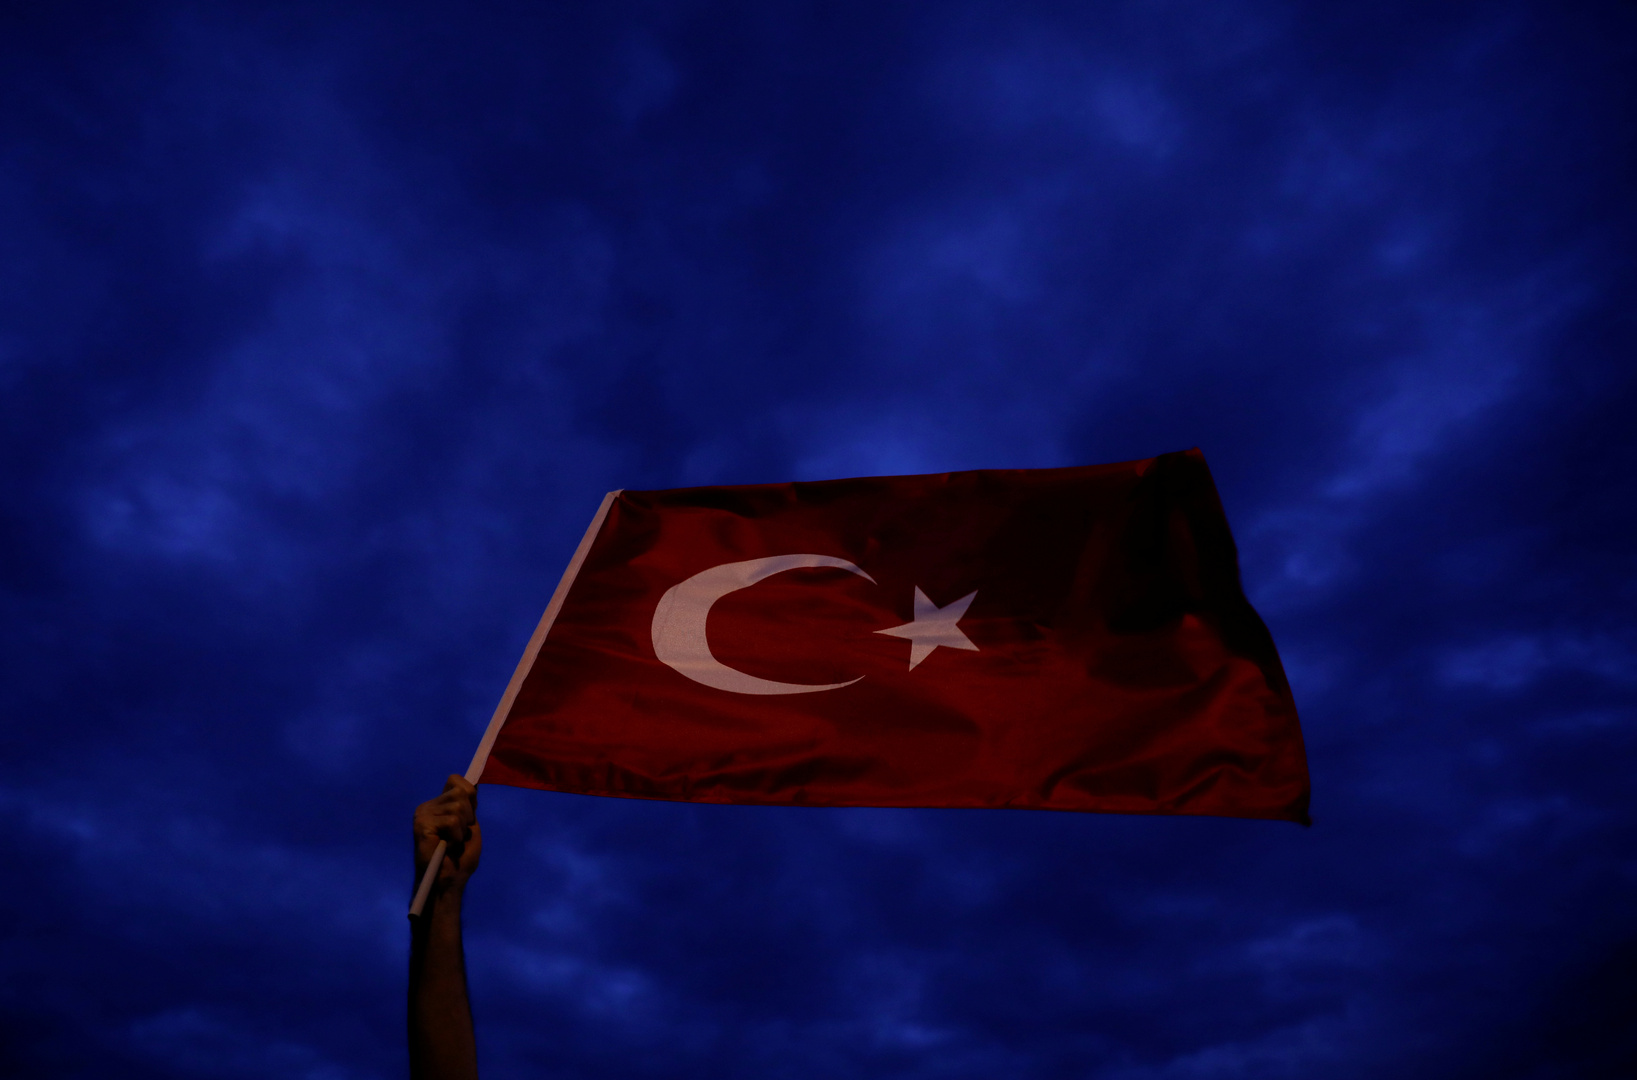 تركيا تأمر باحتجاز أكثر من 80 عسكريا في عملية تستهدف أنصار غولن